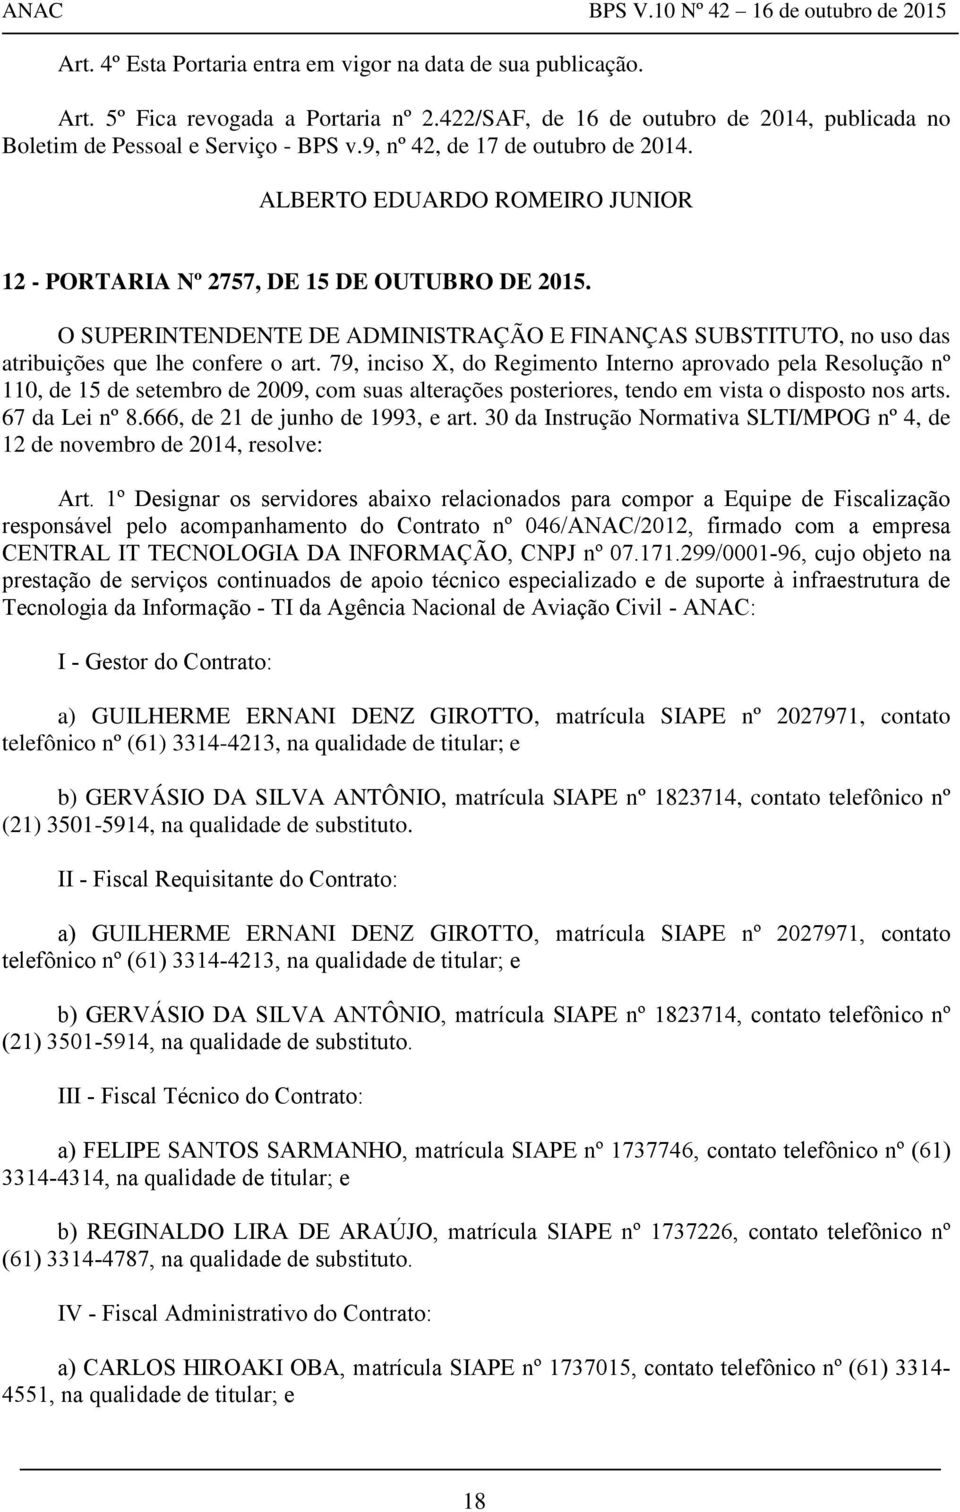 79, inciso X, do Regimento Interno aprovado pela Resolução nº 110, de 15 de setembro de 2009, com suas alterações posteriores, tendo em vista o disposto nos arts. 67 da Lei nº 8.